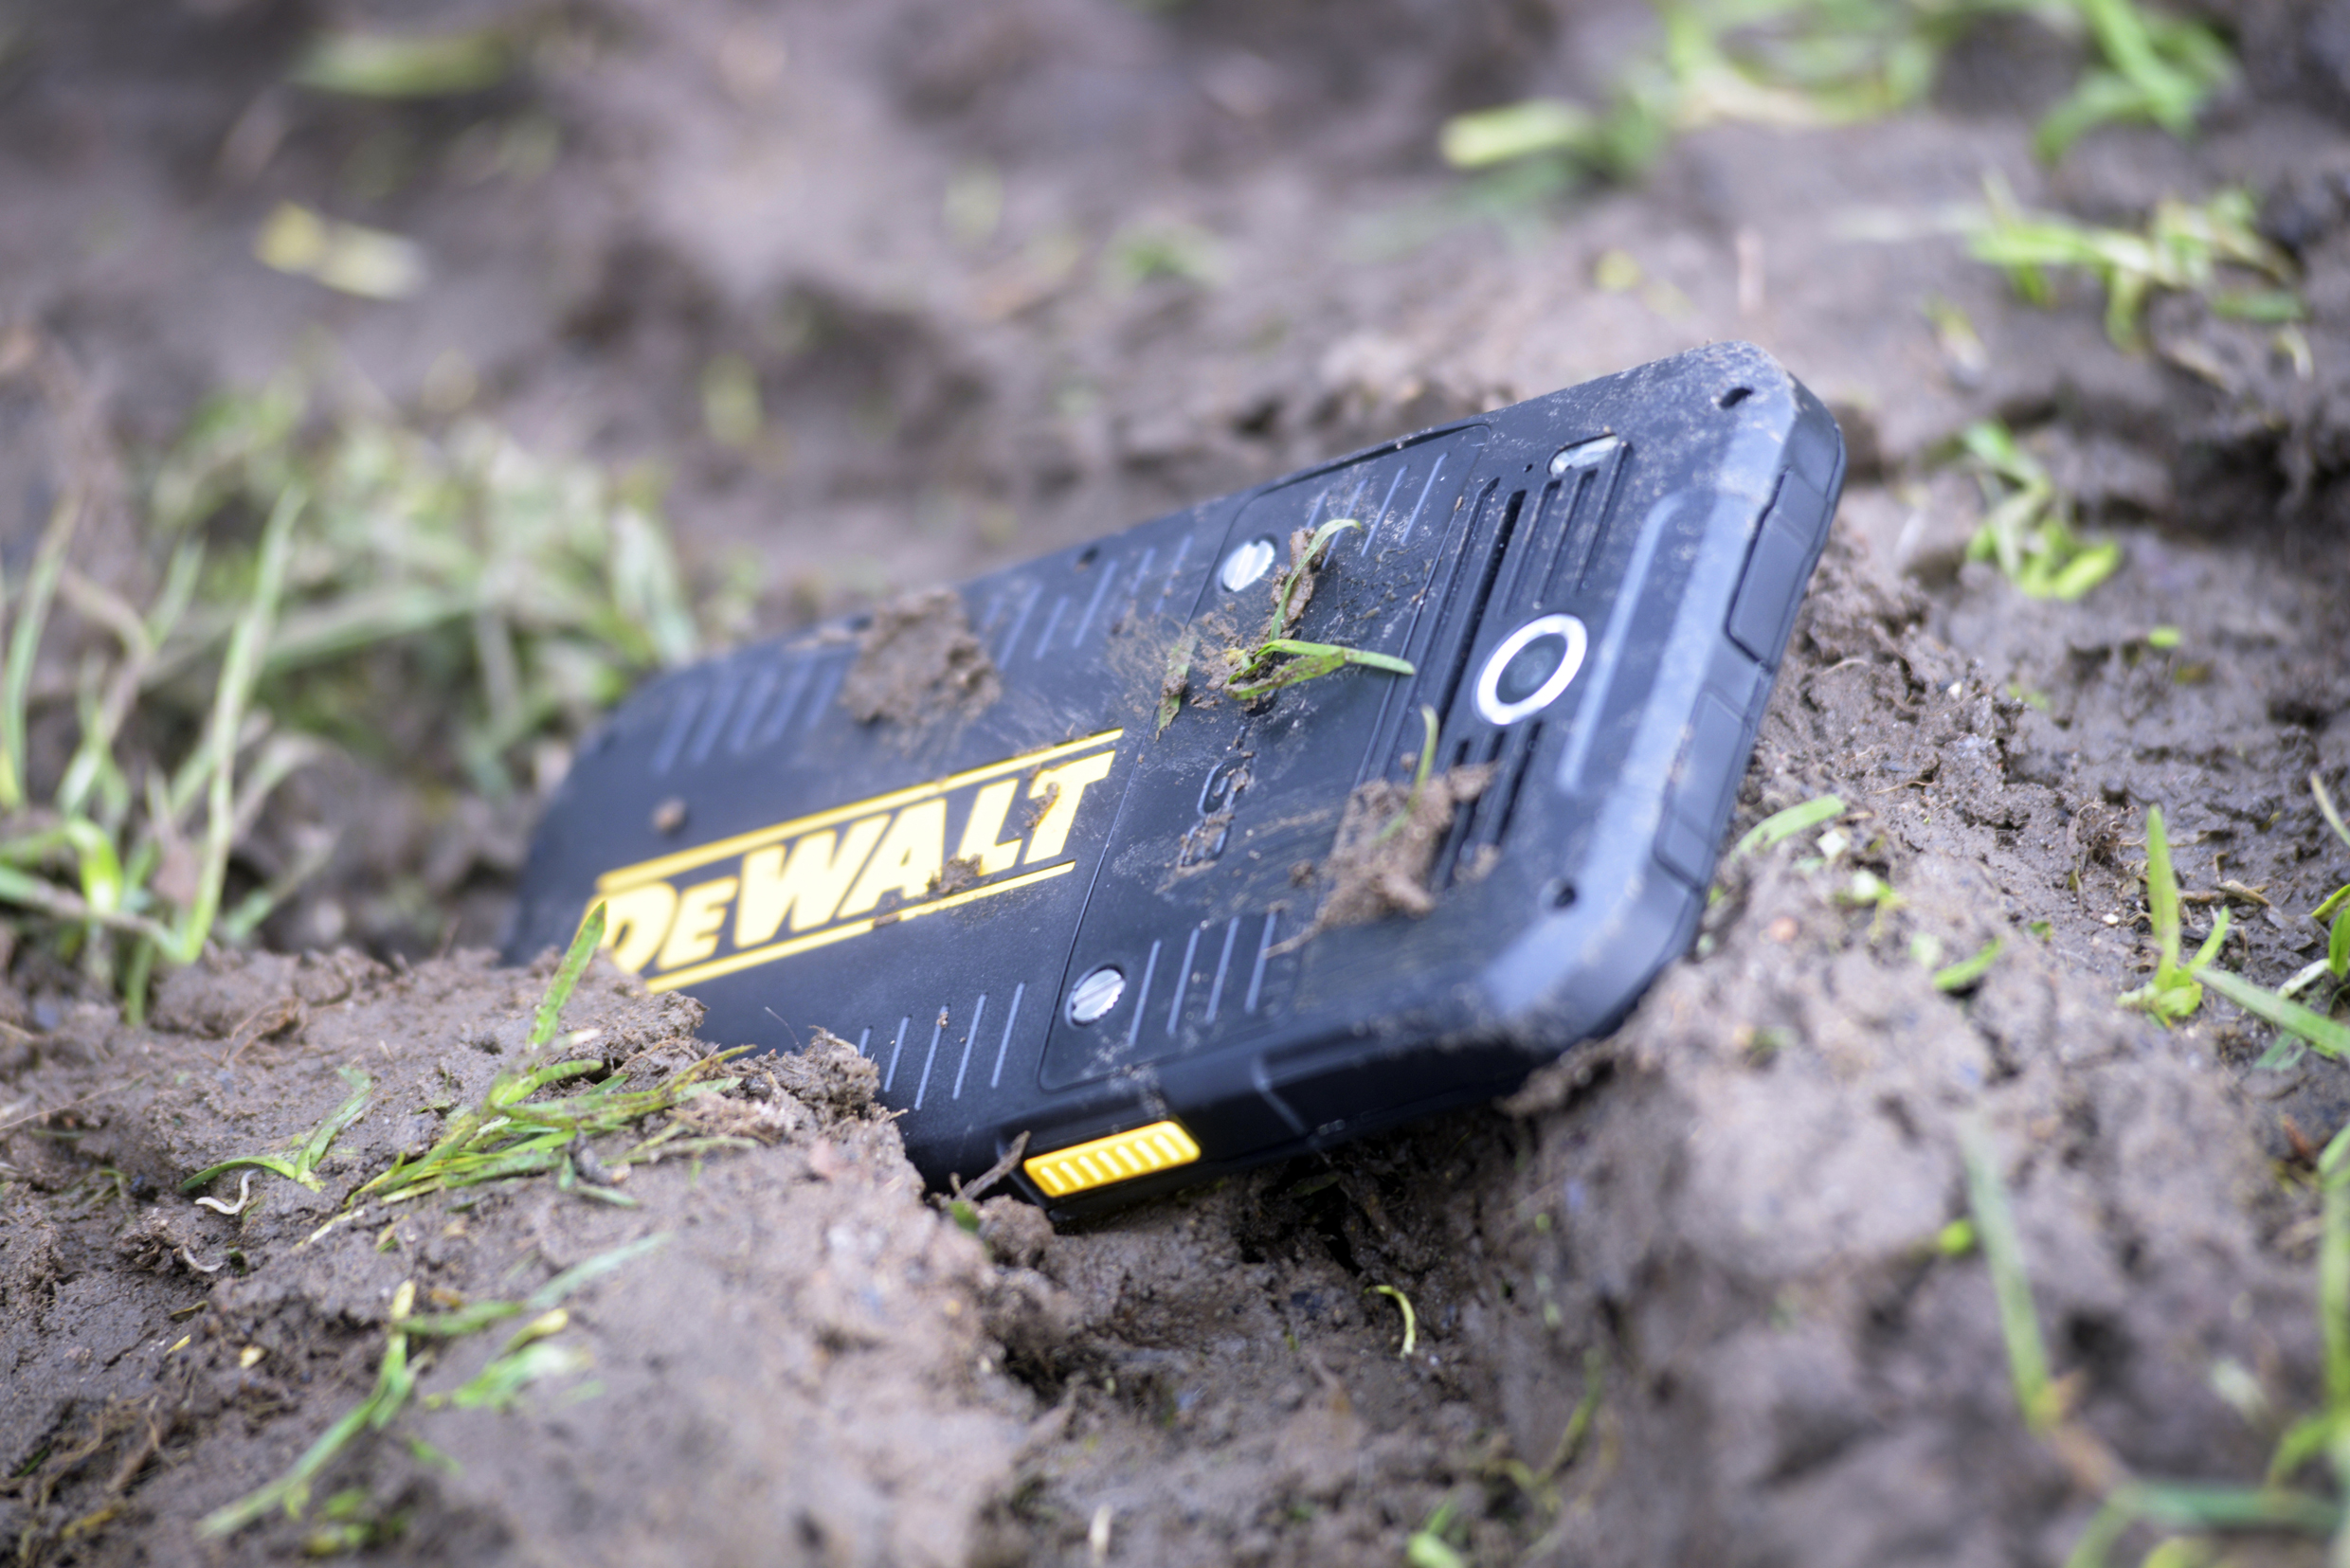 DEWALT-PHONE-MUD outdoor rugged phone